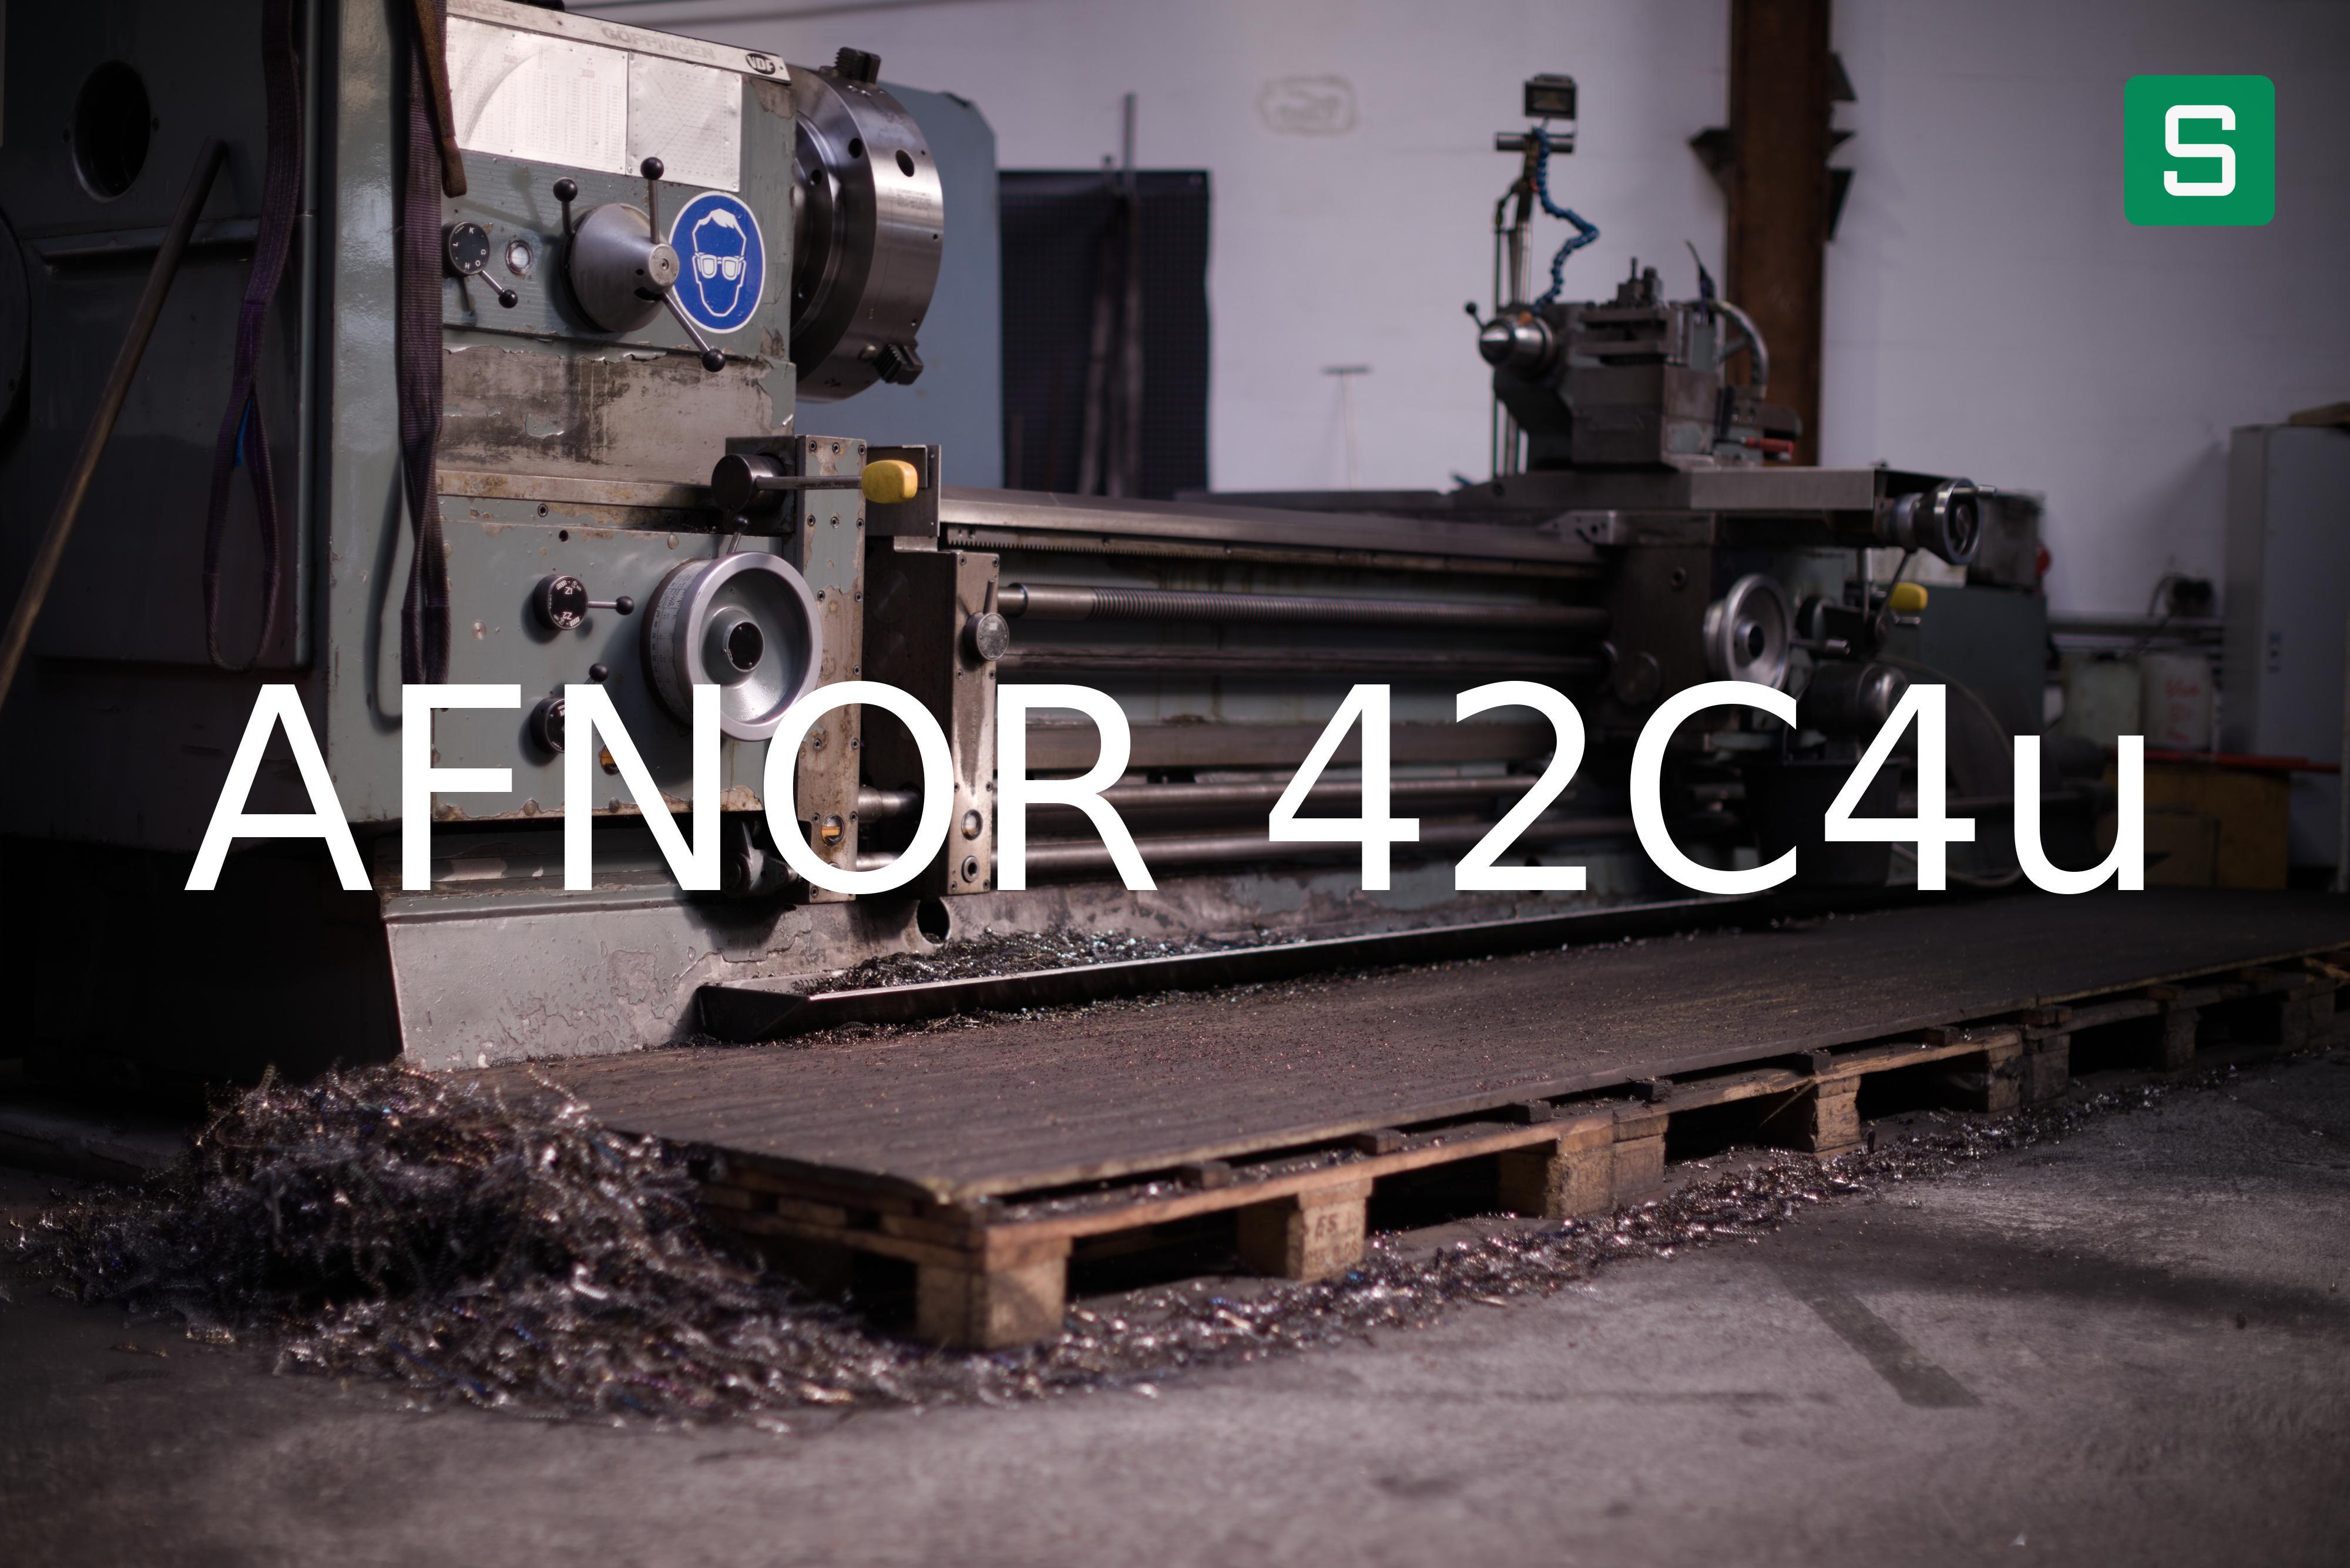 Stahlwerkstoff: AFNOR 42C4u